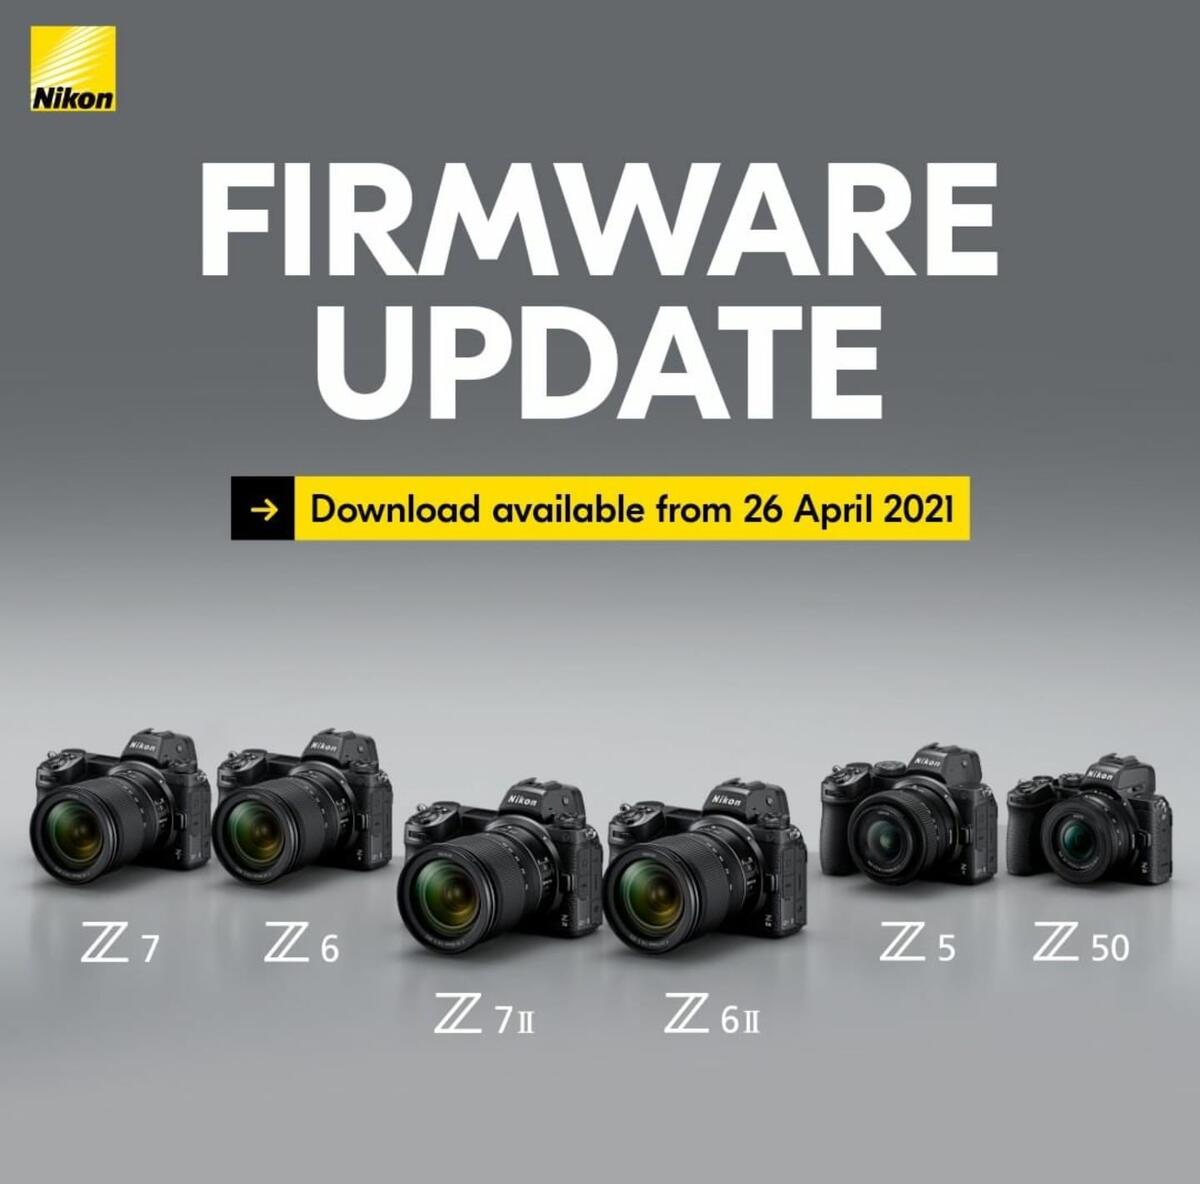 New Nikon Z7 II, Z6 II, Z7, Z6, Z5 and Z50 Firmware Updates